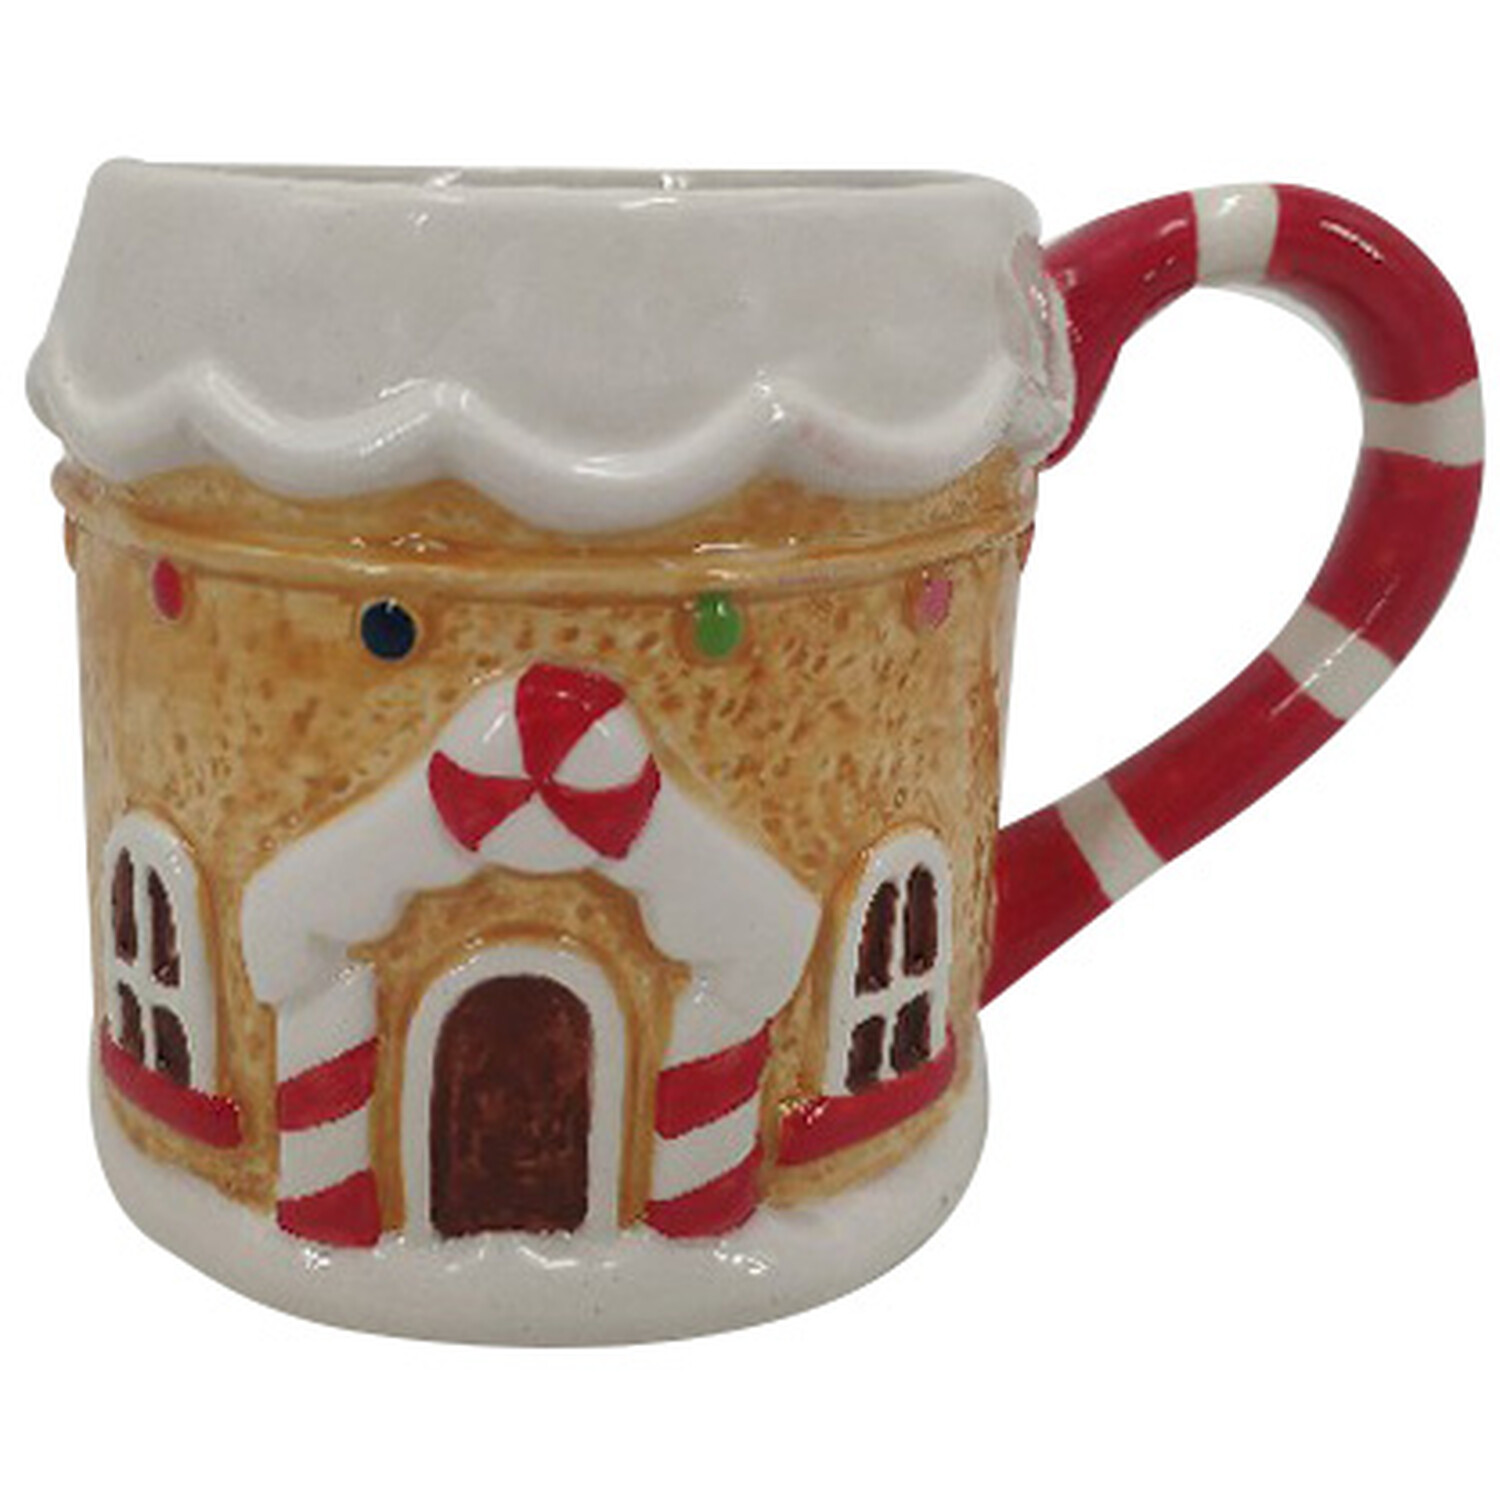 Christmas Kitchen Gingerbread House Mug Image